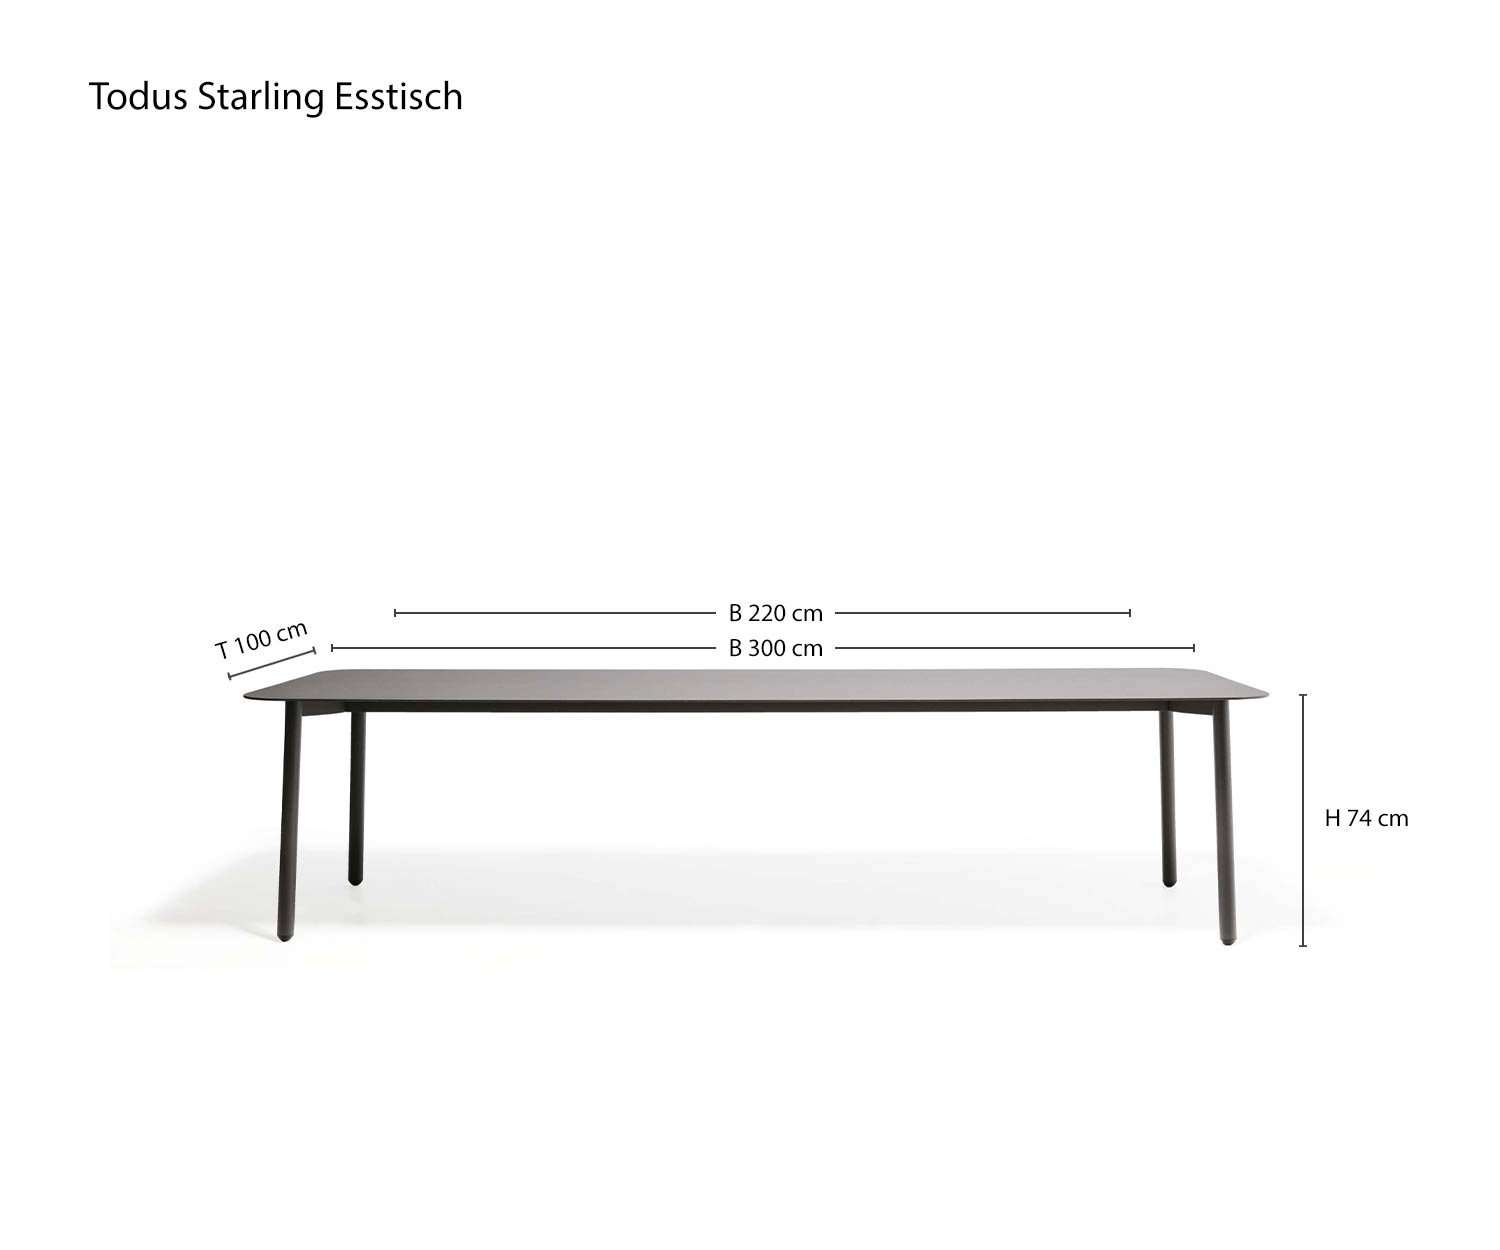 Dimensioni Tavolo da pranzo Starling Design per il giardino